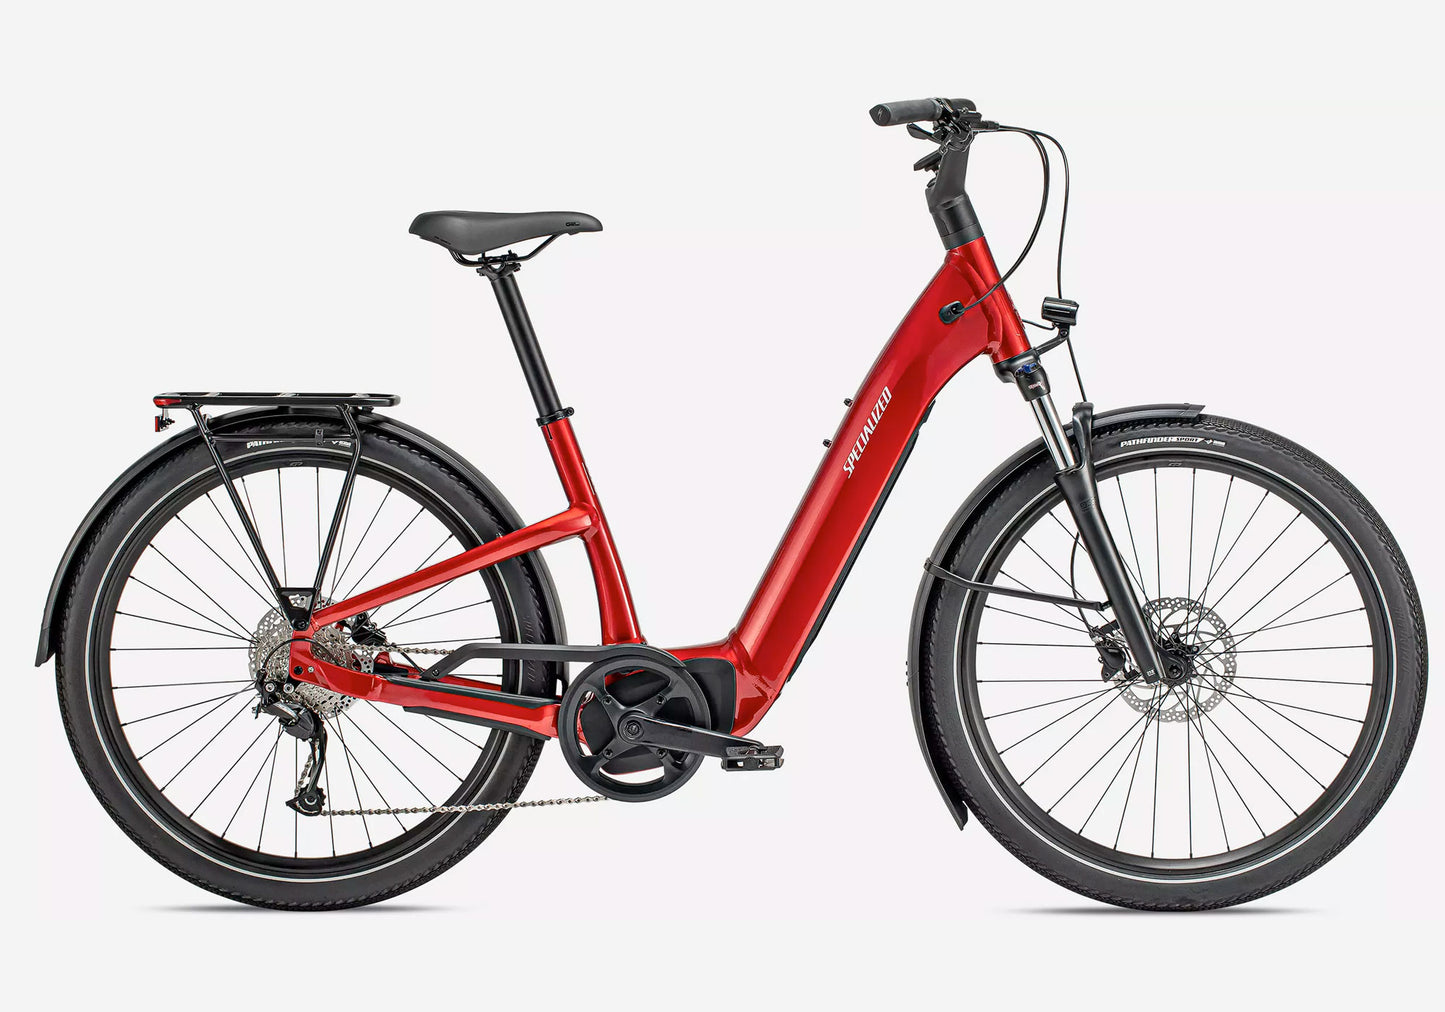 Specialized Turbo Como 3.0 Urban Electric Urban Bike - Red Tint